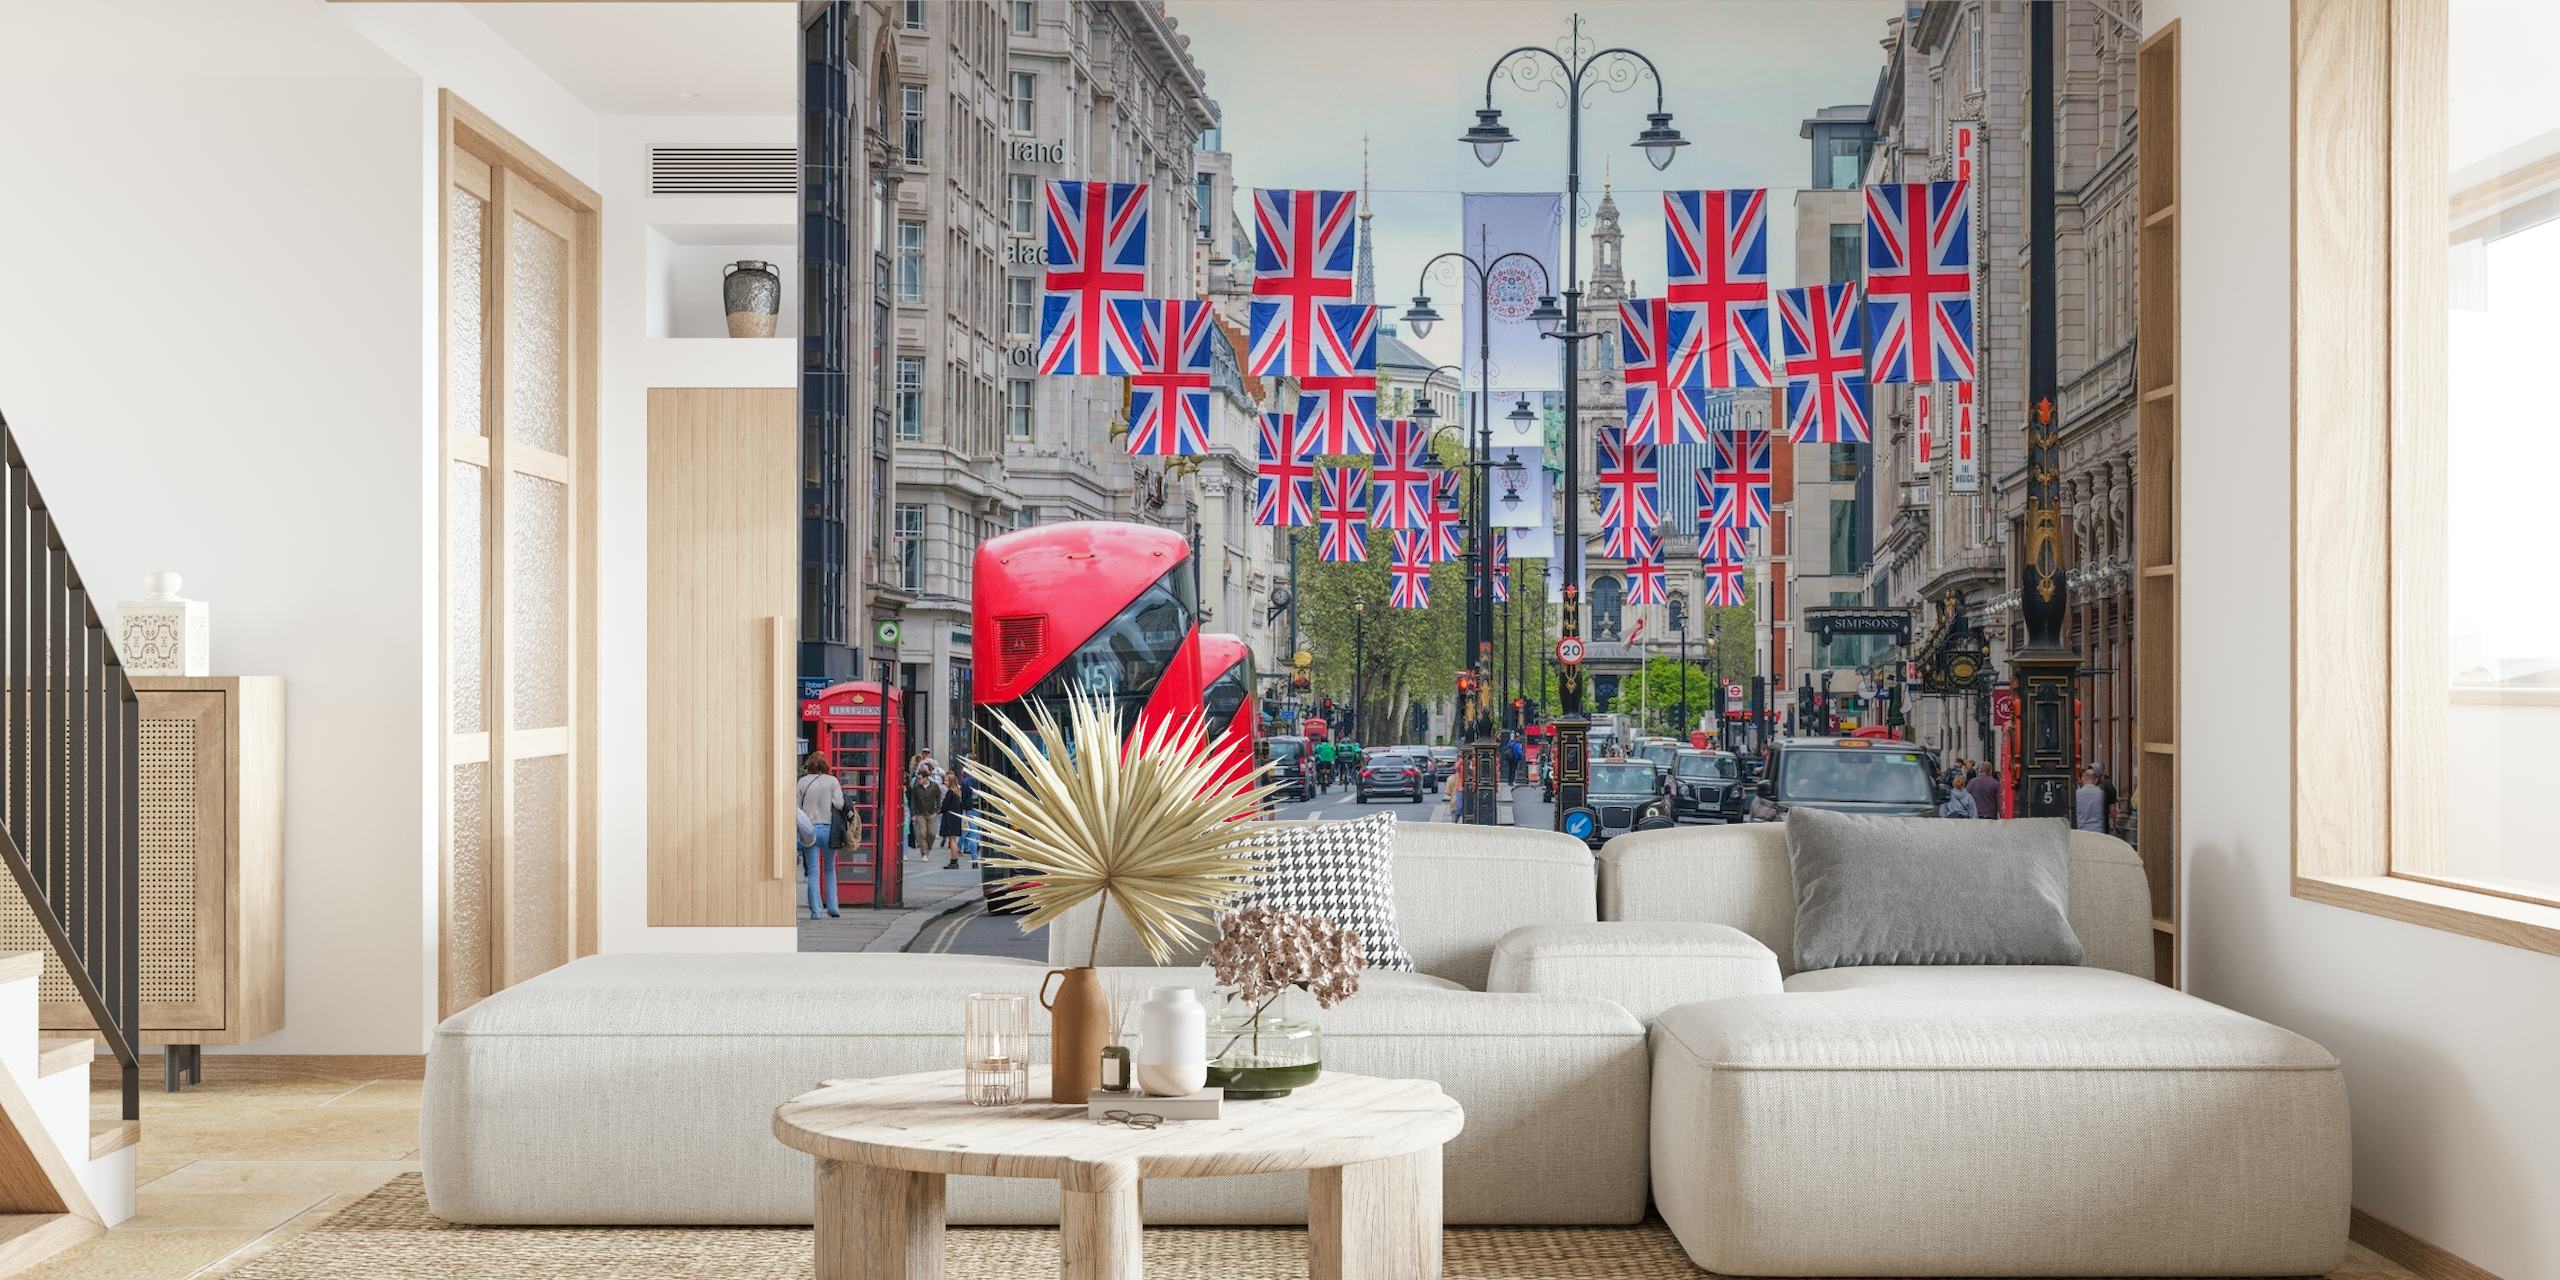 Scena di strada di Londra con le bandiere dell'Union Jack e il murale rosso dell'autobus a due piani